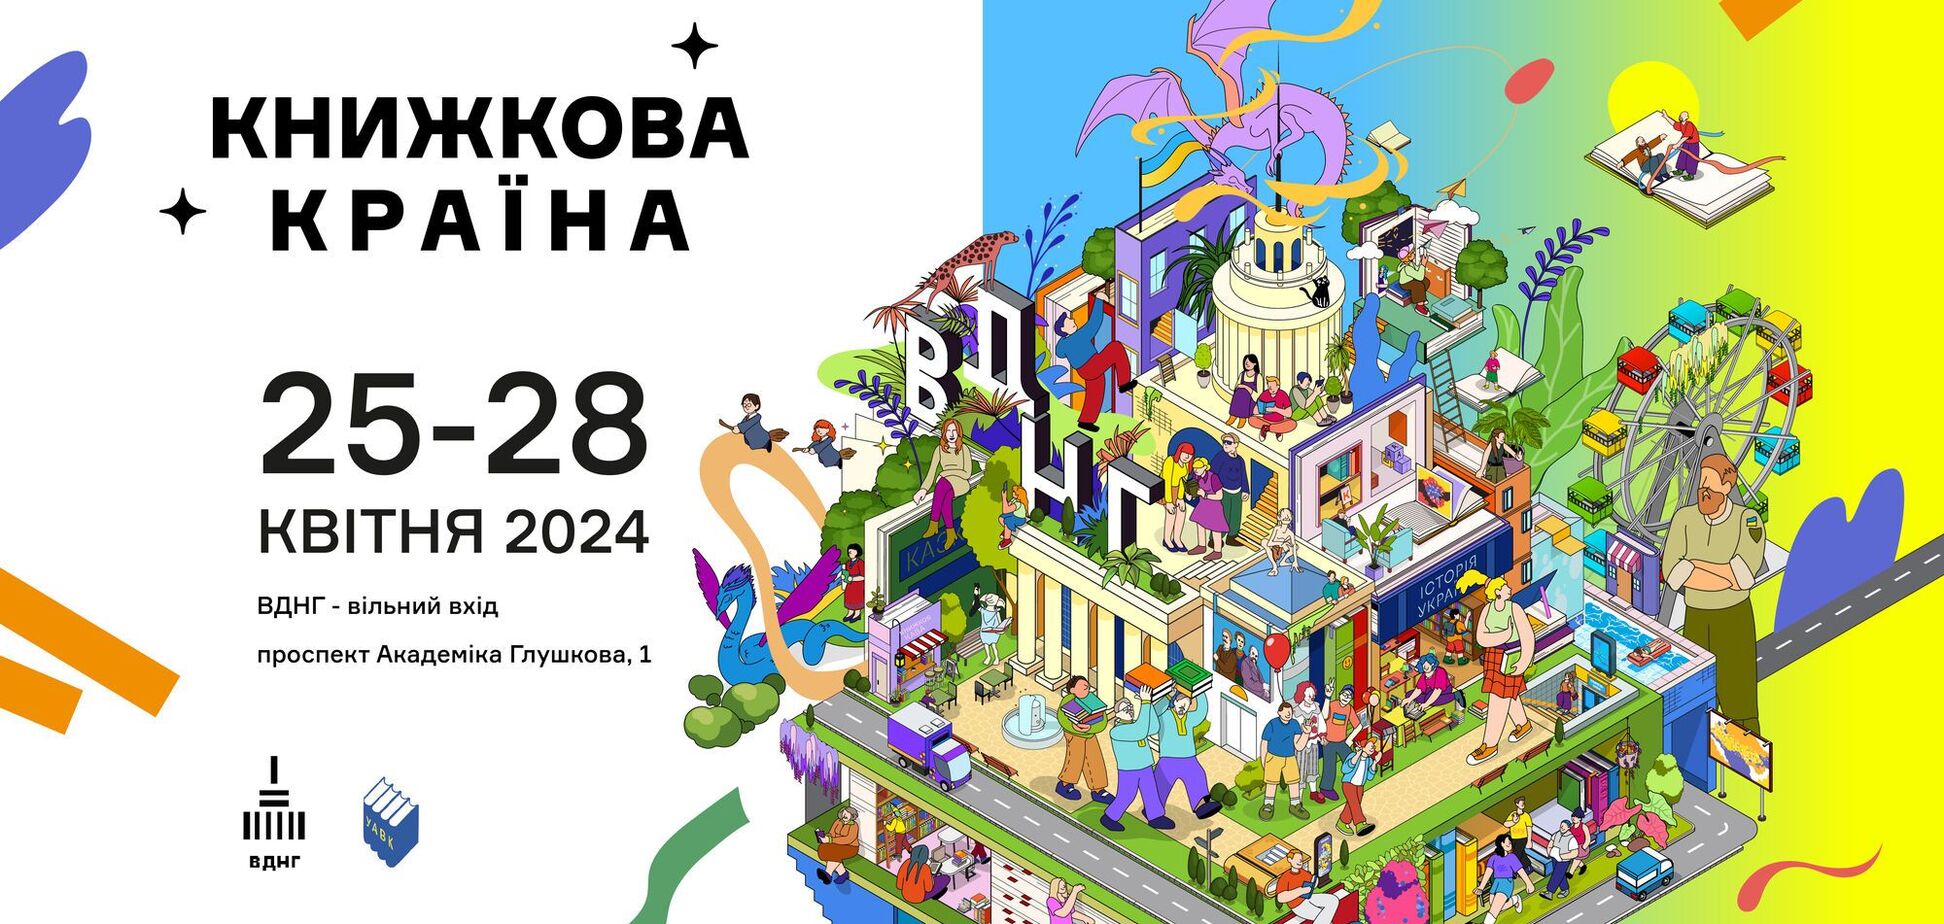 Ярмарок, івенти та ігри: у Києві на ВДНГ відбудеться фестиваль 'Книжкова країна'